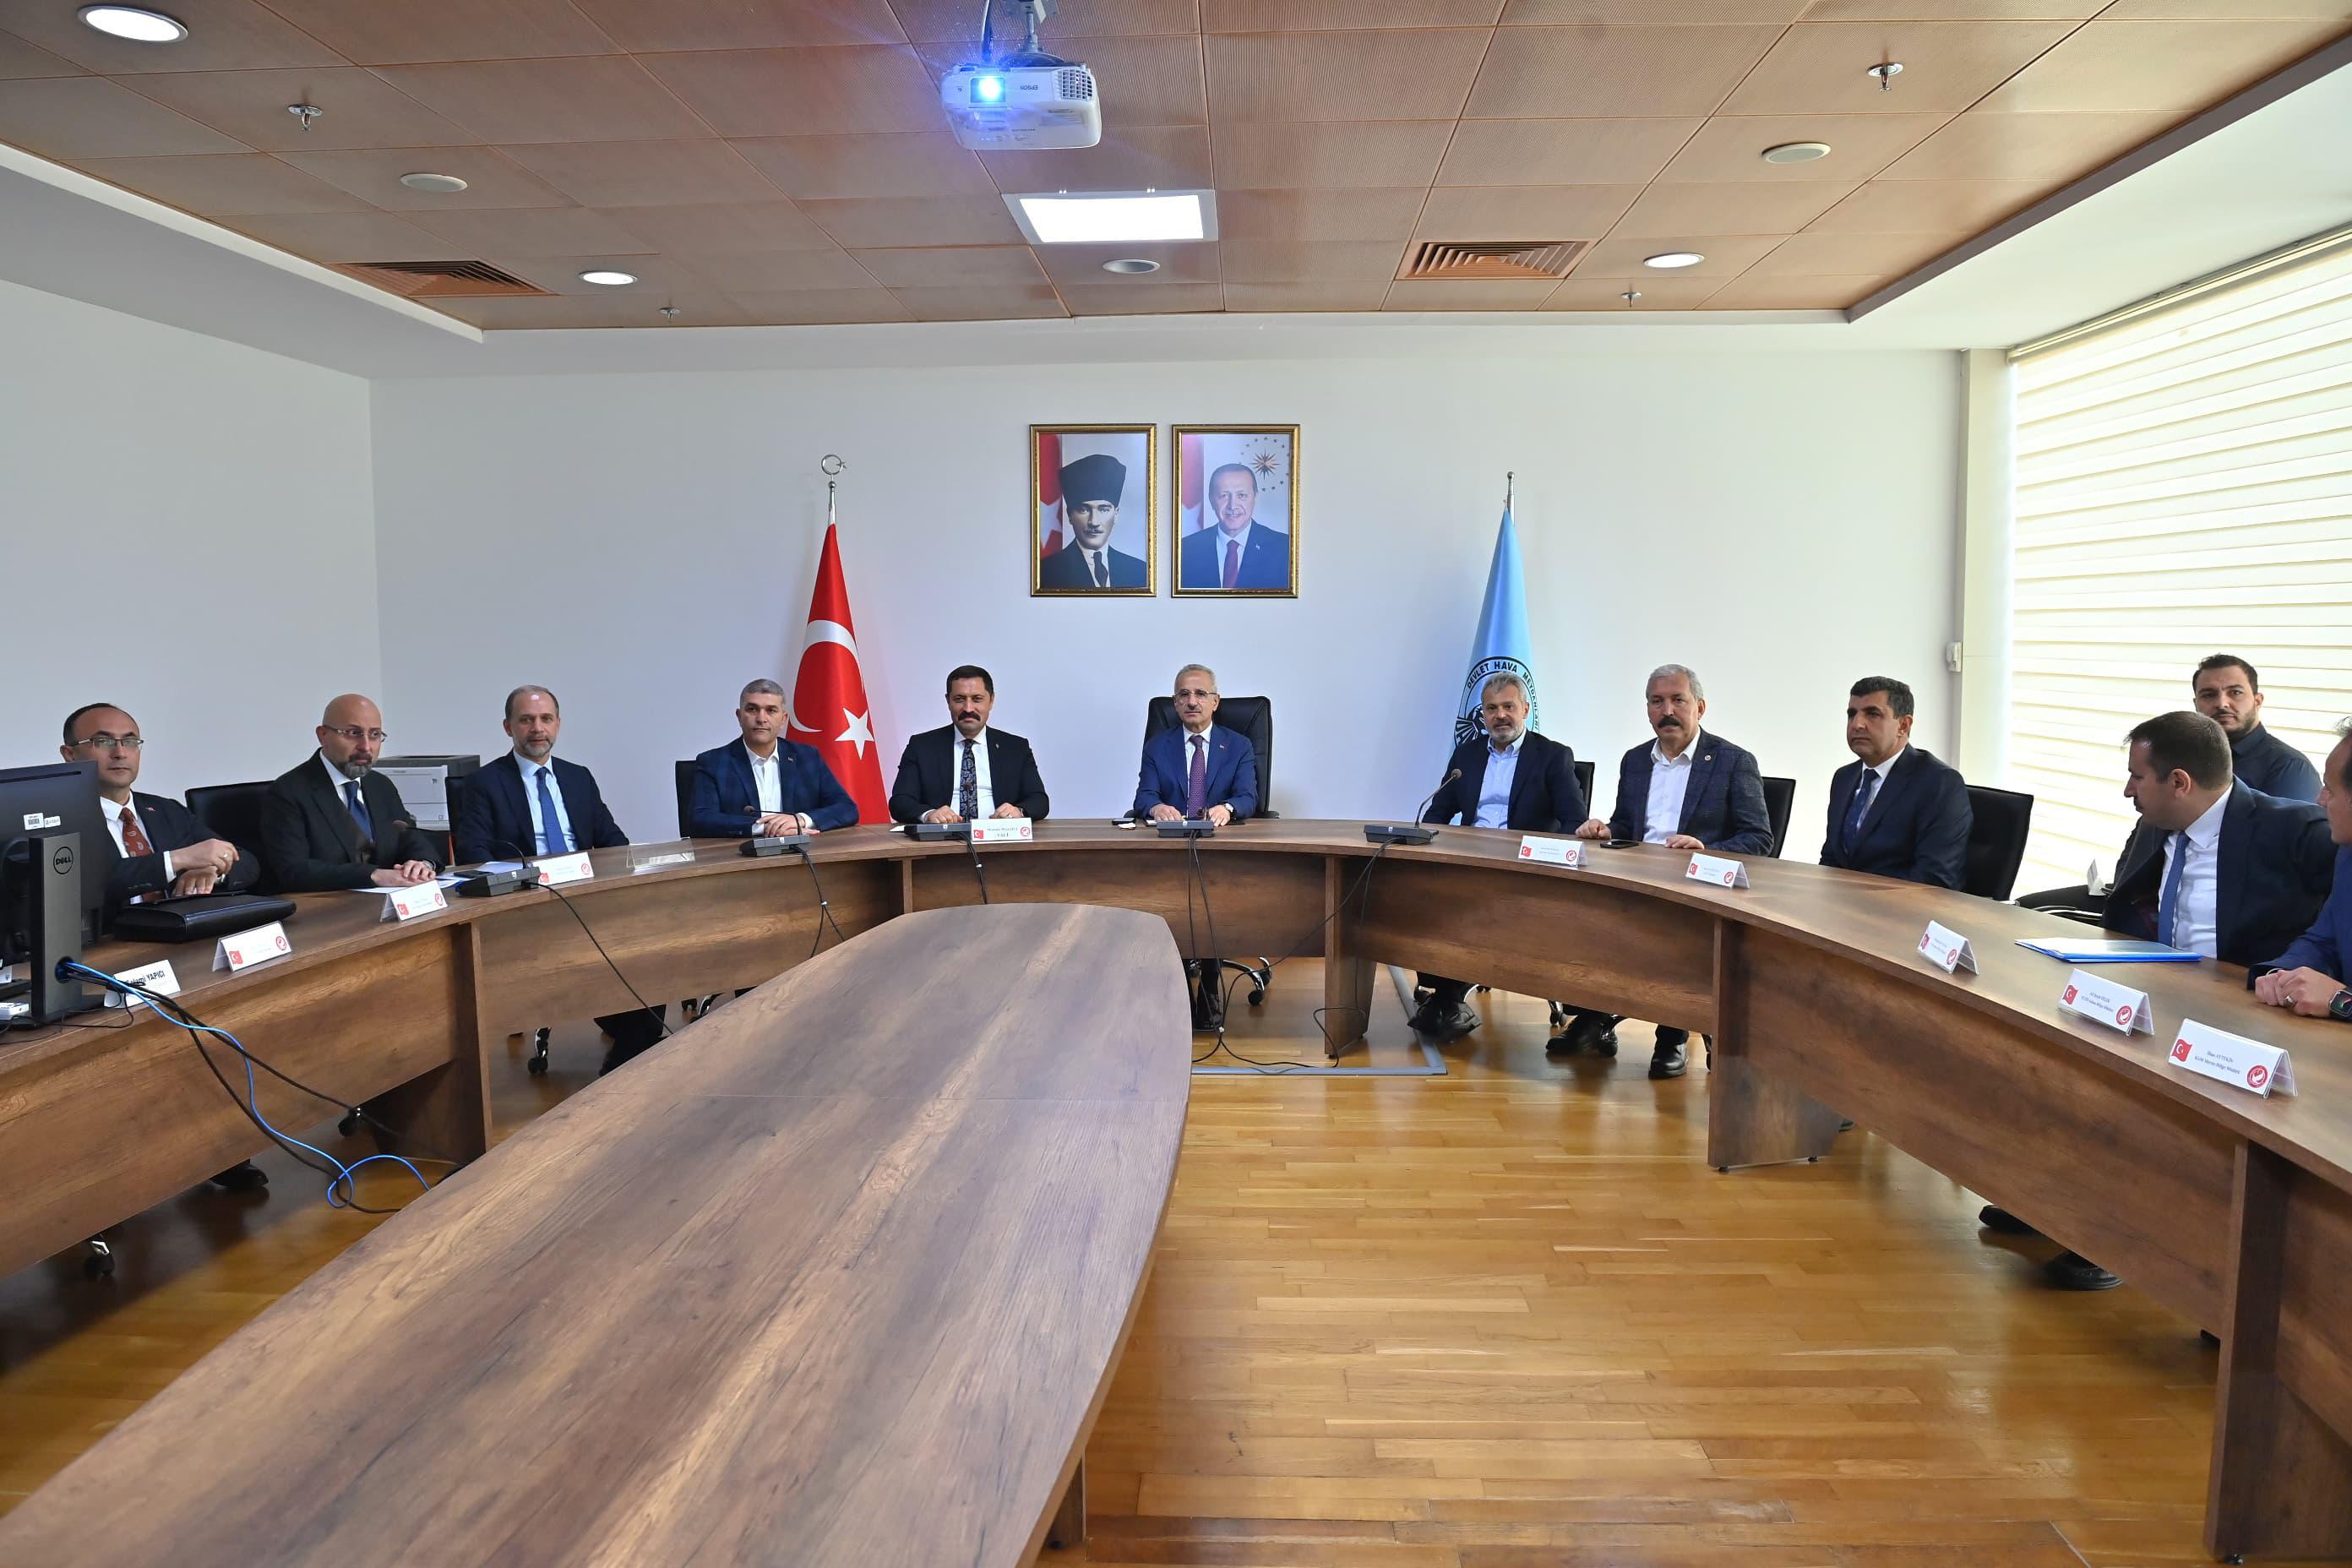 Ulaştırma ve Altyapı Bakanı Uraloğlu “Hatay Havalimanı Yeni Pisti 2026’da Hizmete Açılacak”